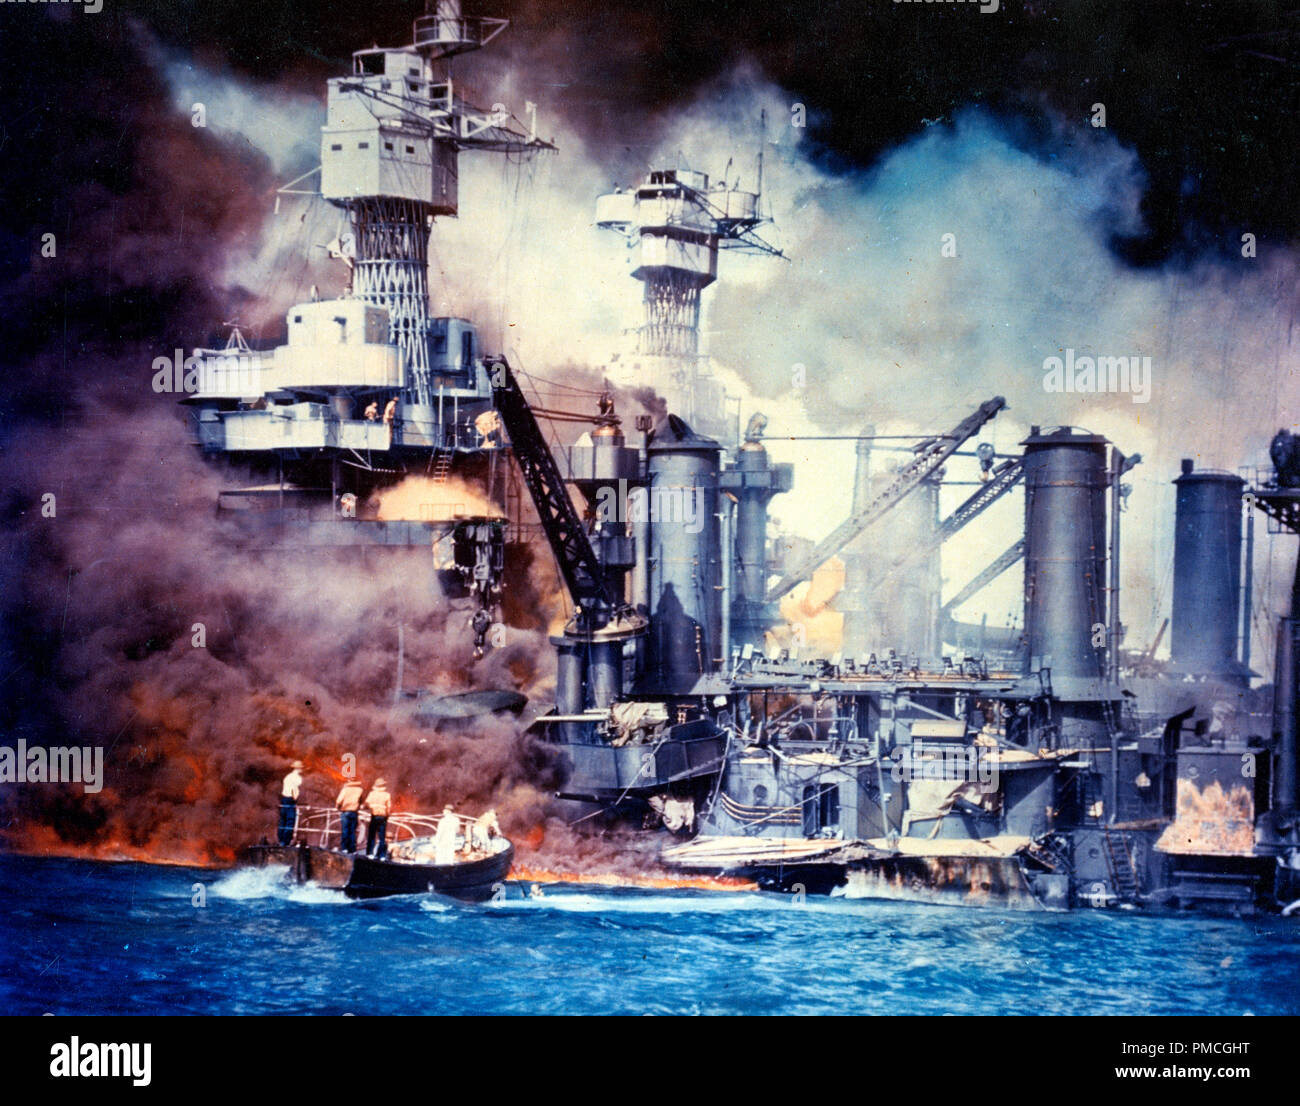 Los marineros en un motor iniciar el rescate de un Superviviente de Agua junto con el sunken USS West Virginia (BB-48) durante o poco después del ataque aéreo japonés a Pearl Harbor. USS Tennessee (BB-43) está en el interior del acorazado hundido. Esta es una versión de tintado a color de la foto no es una fotografía en color real. Foto de stock